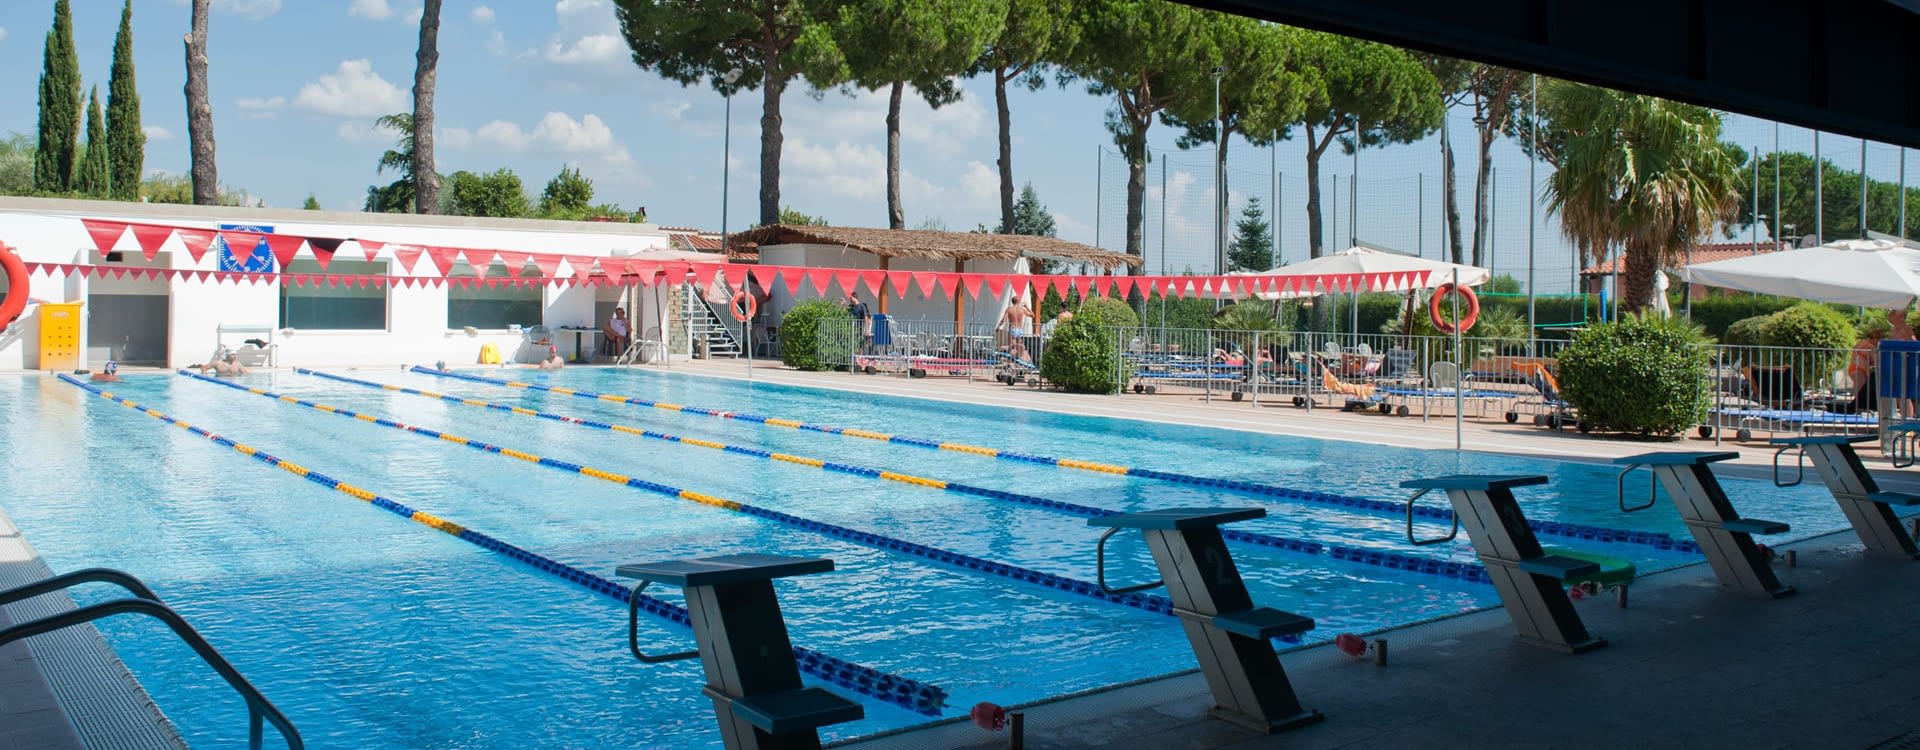 Timeout Wellness Club - Centro benessere e fitness con piscina a Roma